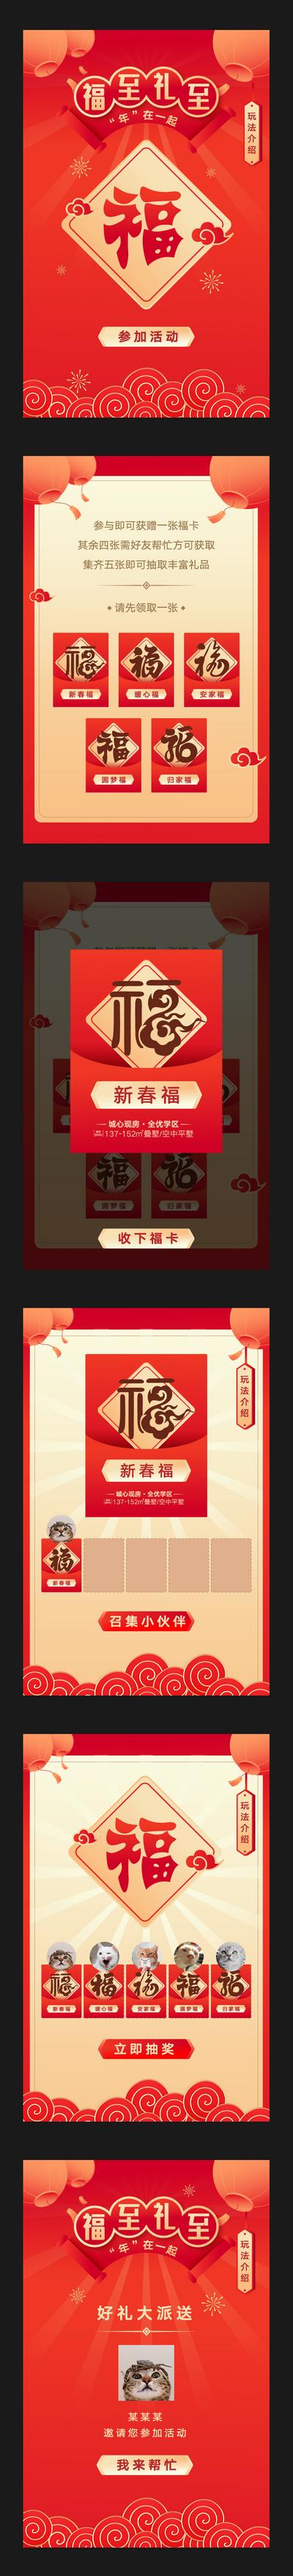 南门网 H5 专题设计 房地产 中国传统节日 新年 集福 游戏